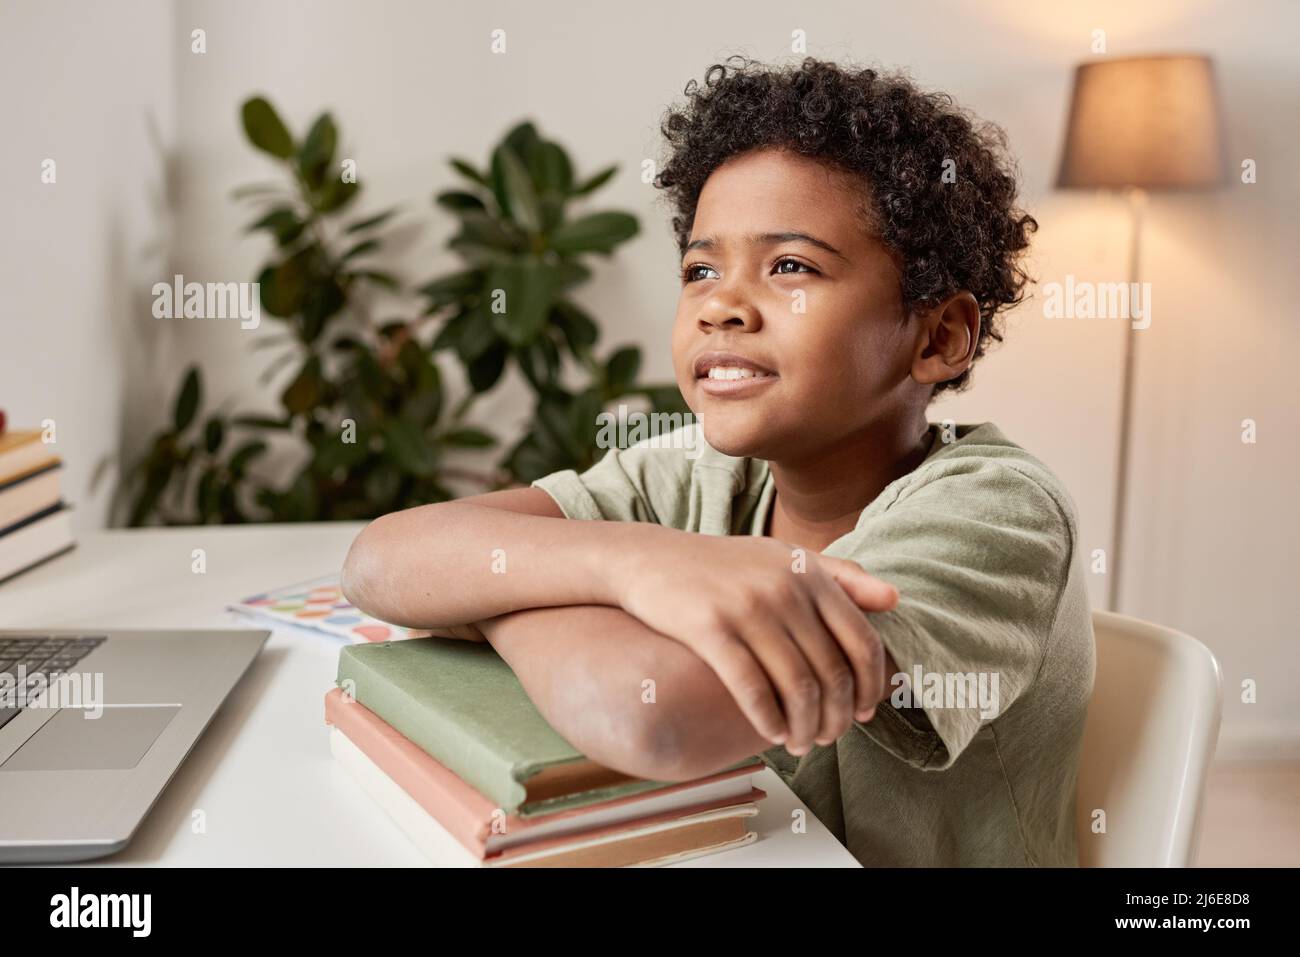 Sorridente ragazzo nero sognante con capelli ricci seduto con le braccia incrociate su pile di libri alla scrivania nella sua camera Foto Stock